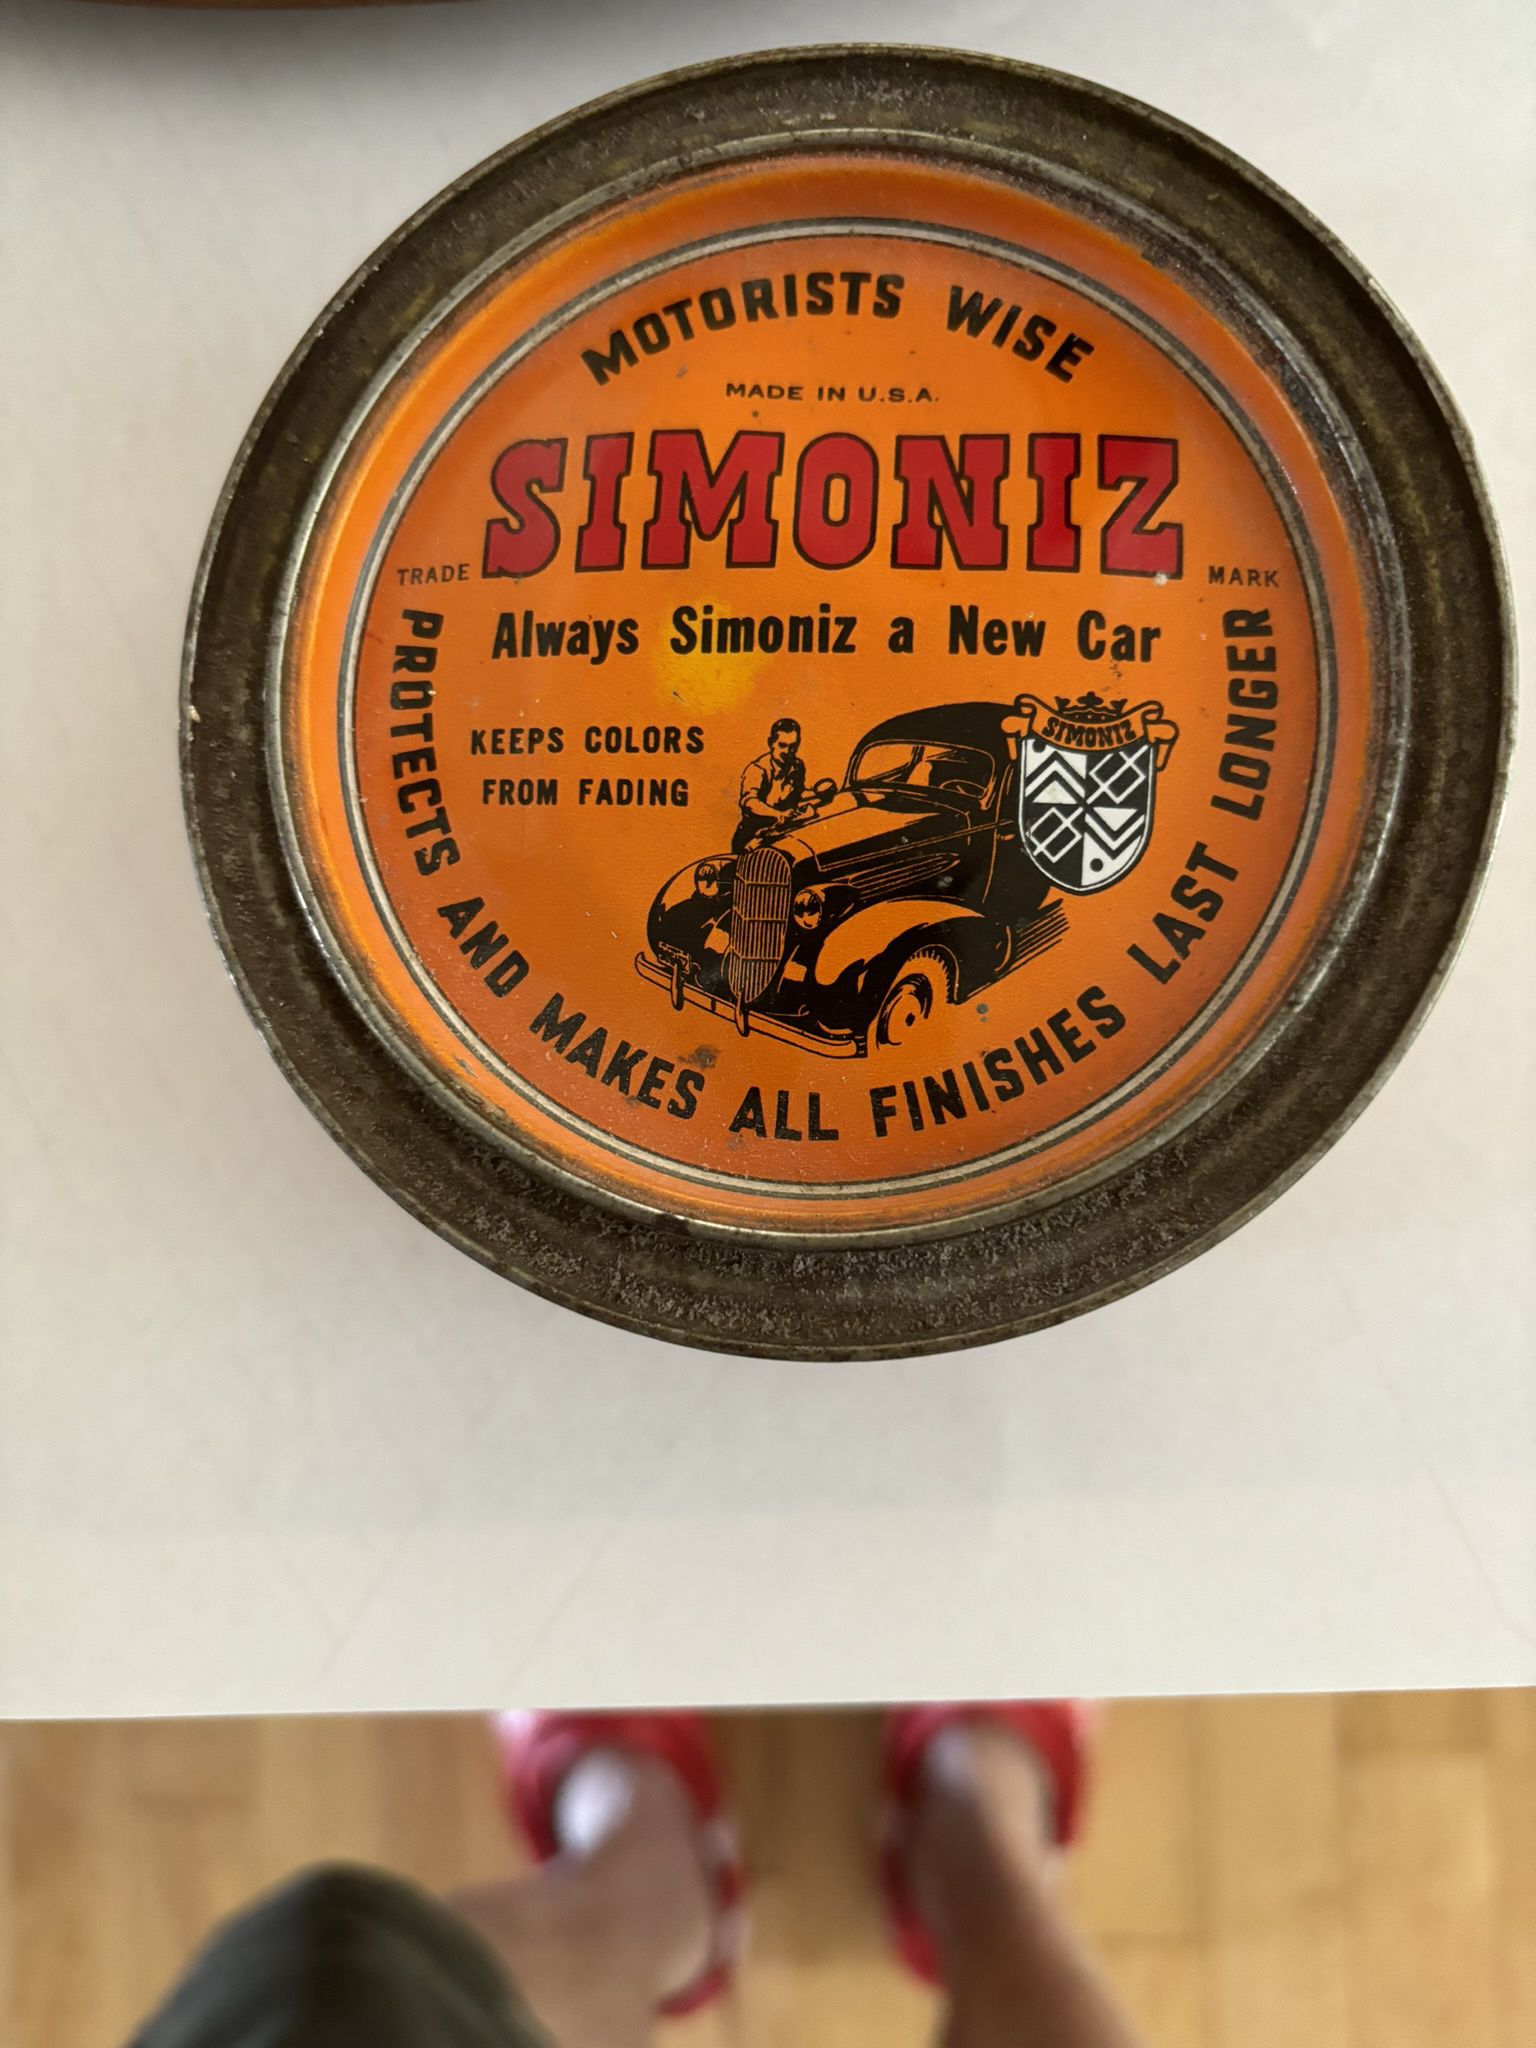 1930s Can Of Simoniz Wax